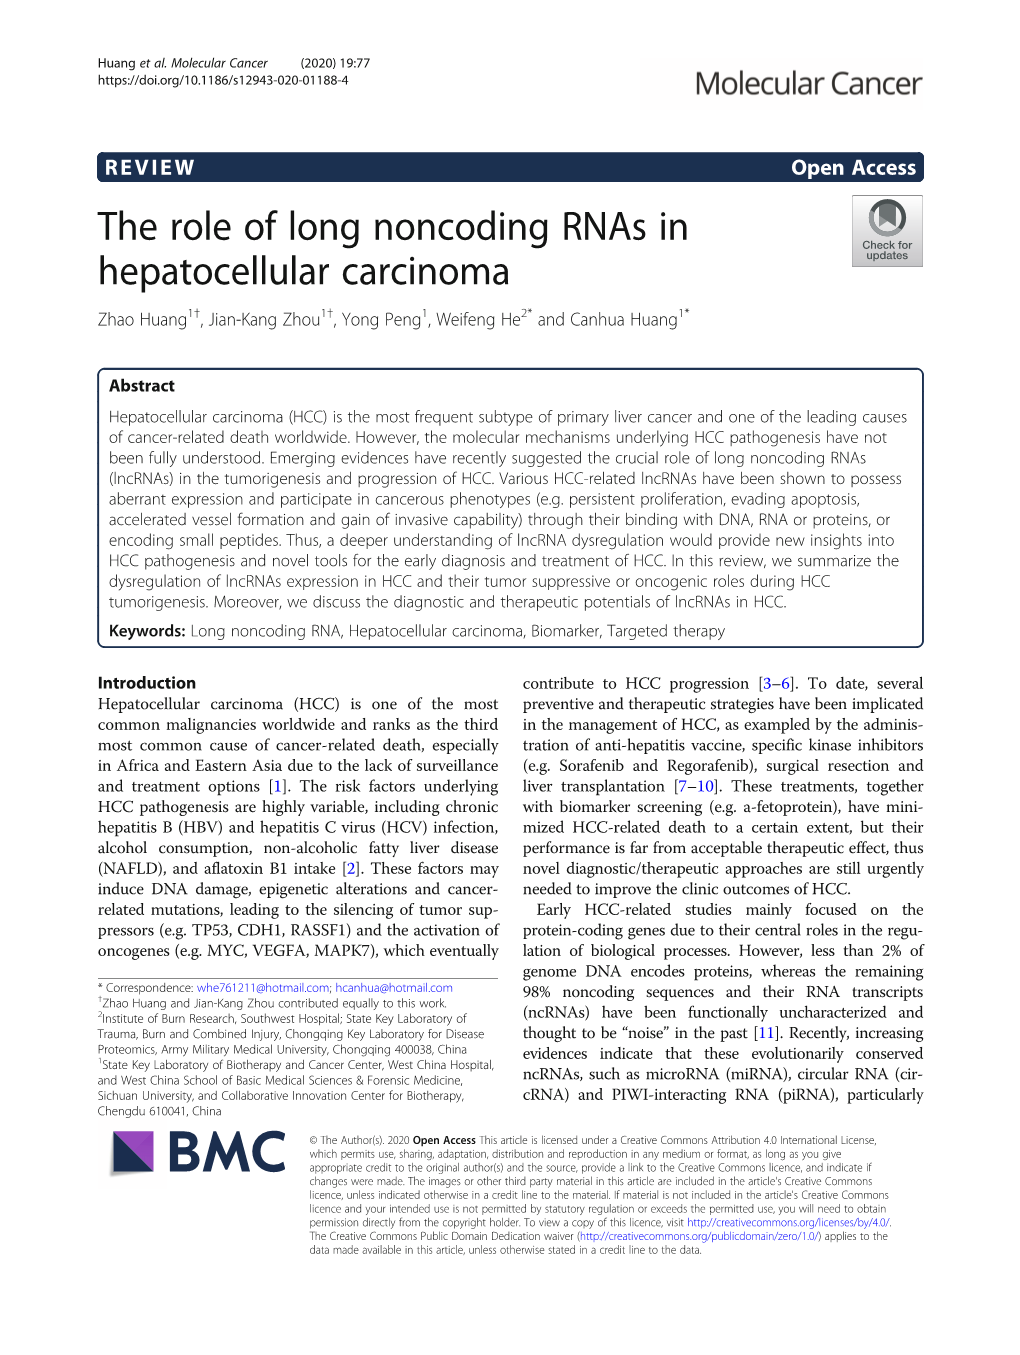 The Role of Long Noncoding Rnas in Hepatocellular Carcinoma Zhao Huang1†, Jian-Kang Zhou1†, Yong Peng1, Weifeng He2* and Canhua Huang1*